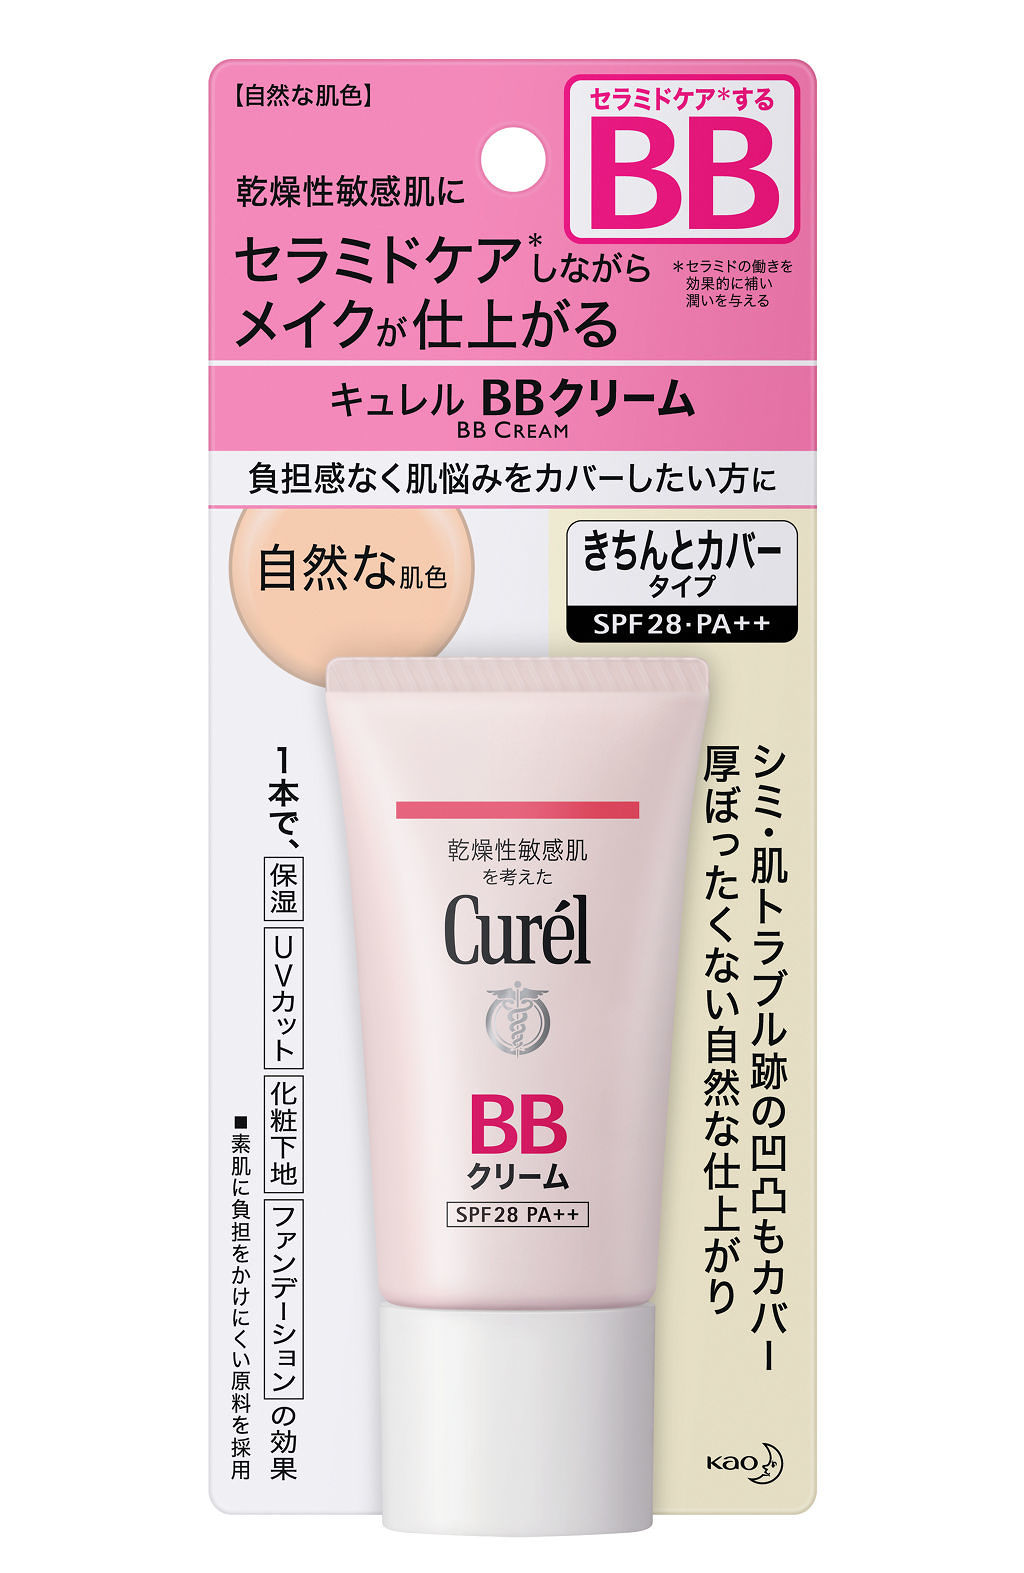 BBクリーム 自然な肌色 / キュレル(Curel) | LIPS